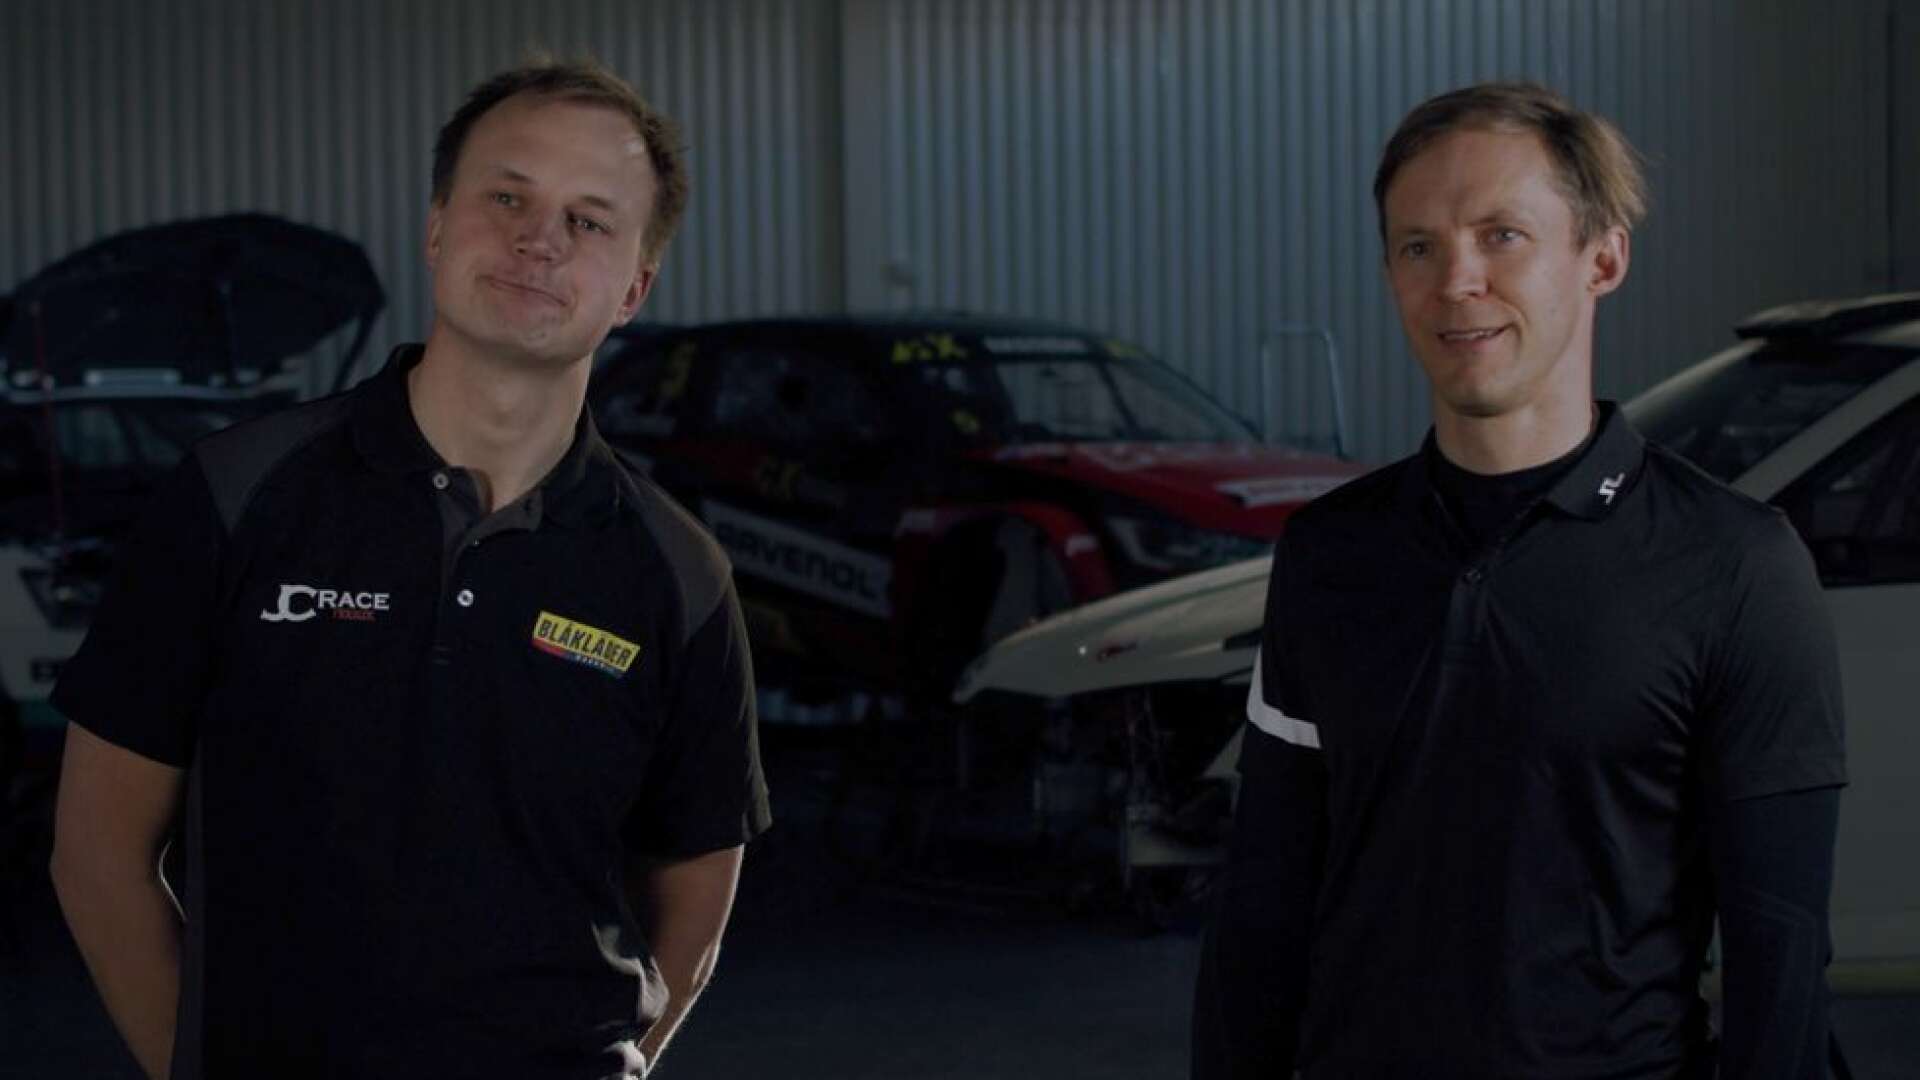 Huvudfigurerna i den nya storsatsningen är Joel Christoffersson och Mattias Ekström.